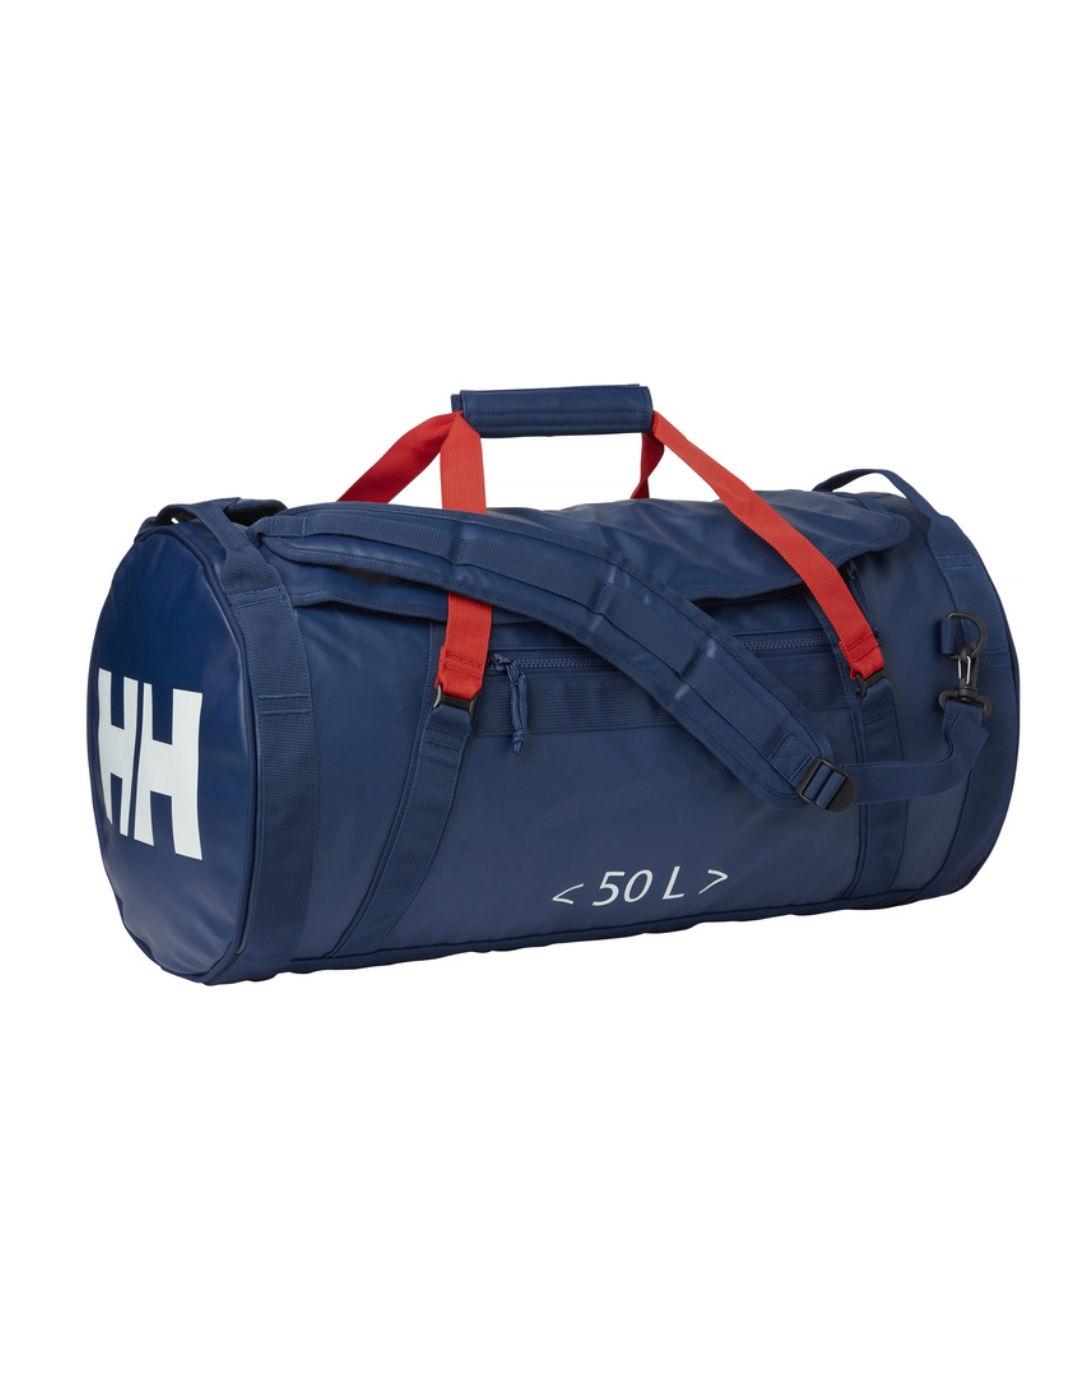 Helly Hansen - comprar bolsos, bolsas y mochilas de viaje baratas